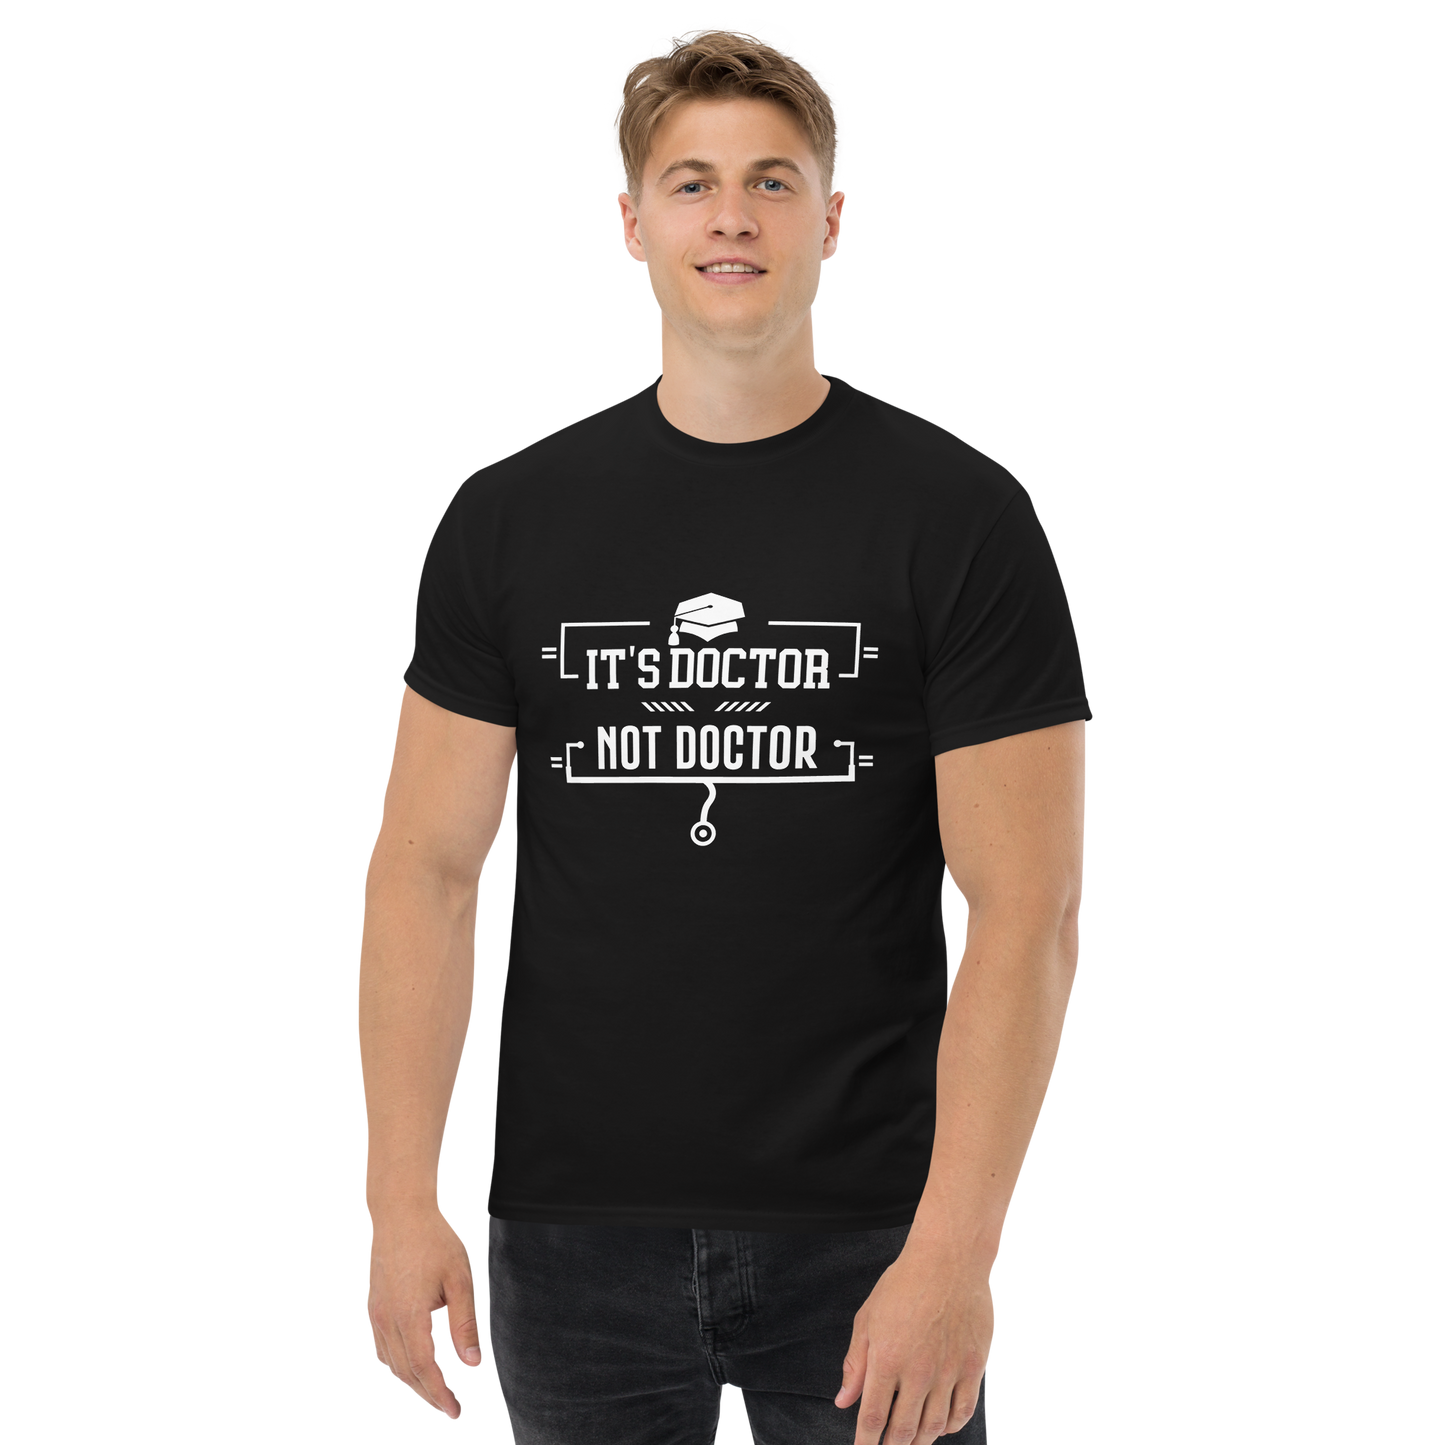 It's Doctor, Not Doctor - Men's/Unisex